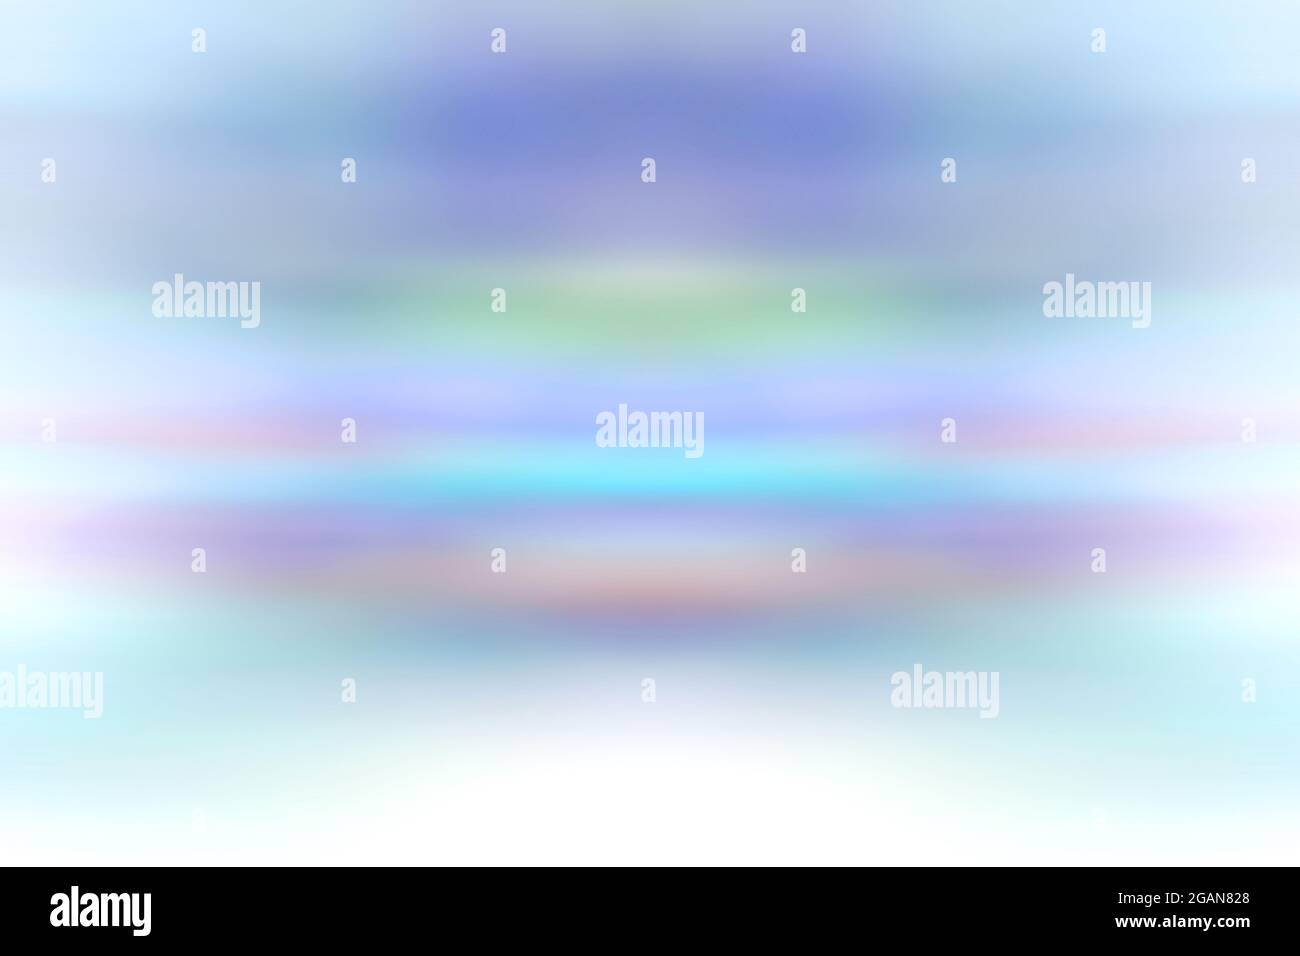 Abstraktes mehrfarbiger Entwurf für Hintergrund, in gemischten Farbverläufen aus Pastellfarben, blau, lila, rosa, grün, blaugrün, weiß und türkis mit Kopierfläche Stockfoto